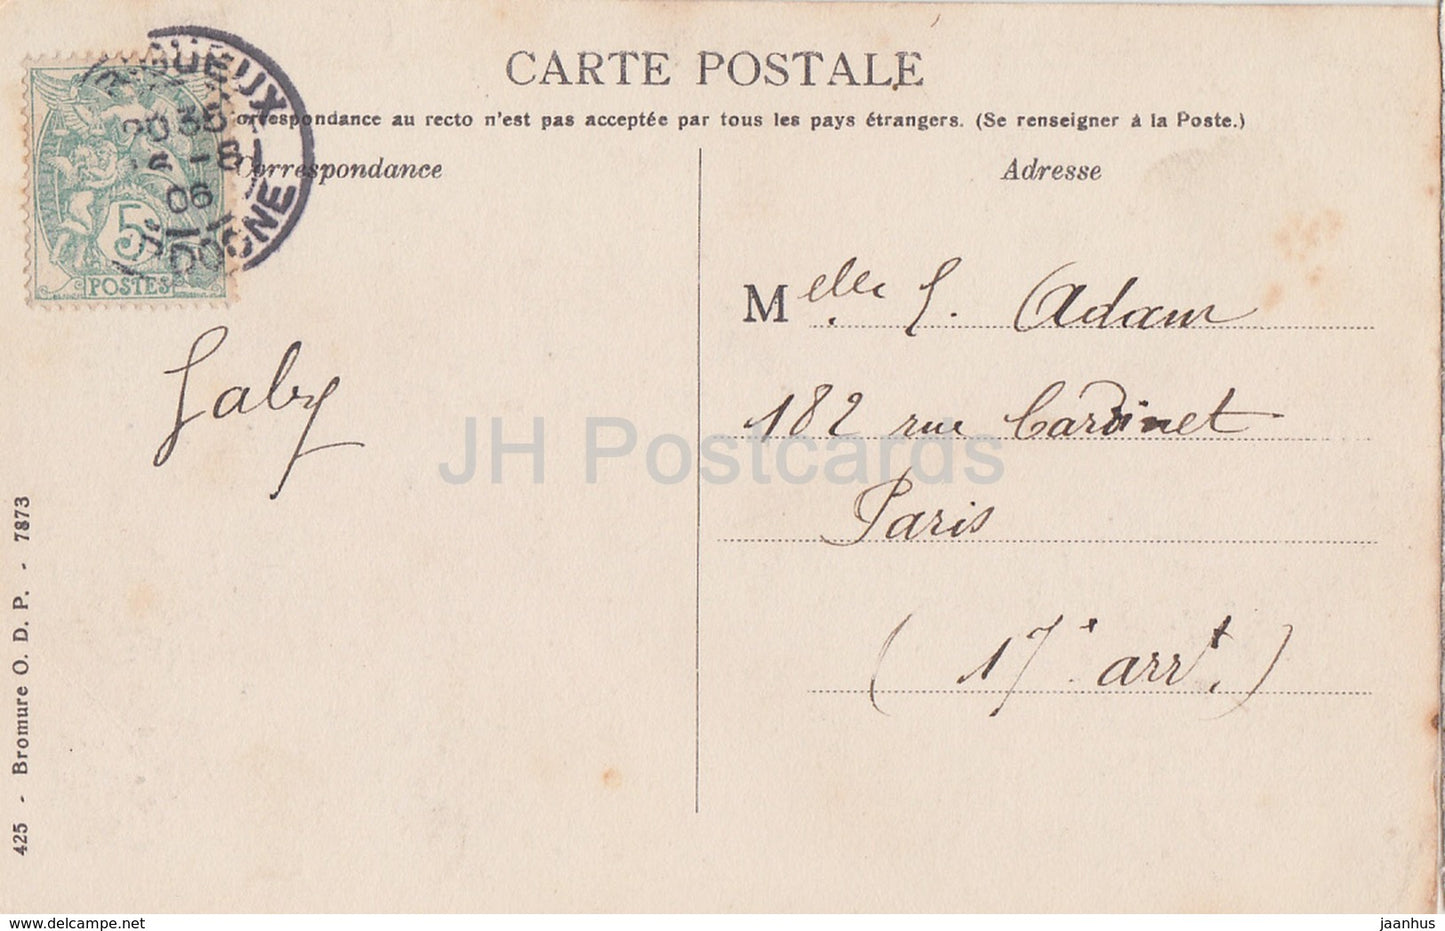 Périgueux - Basilique Saint Front - cathédrale - carte postale ancienne - 1906 - France - occasion